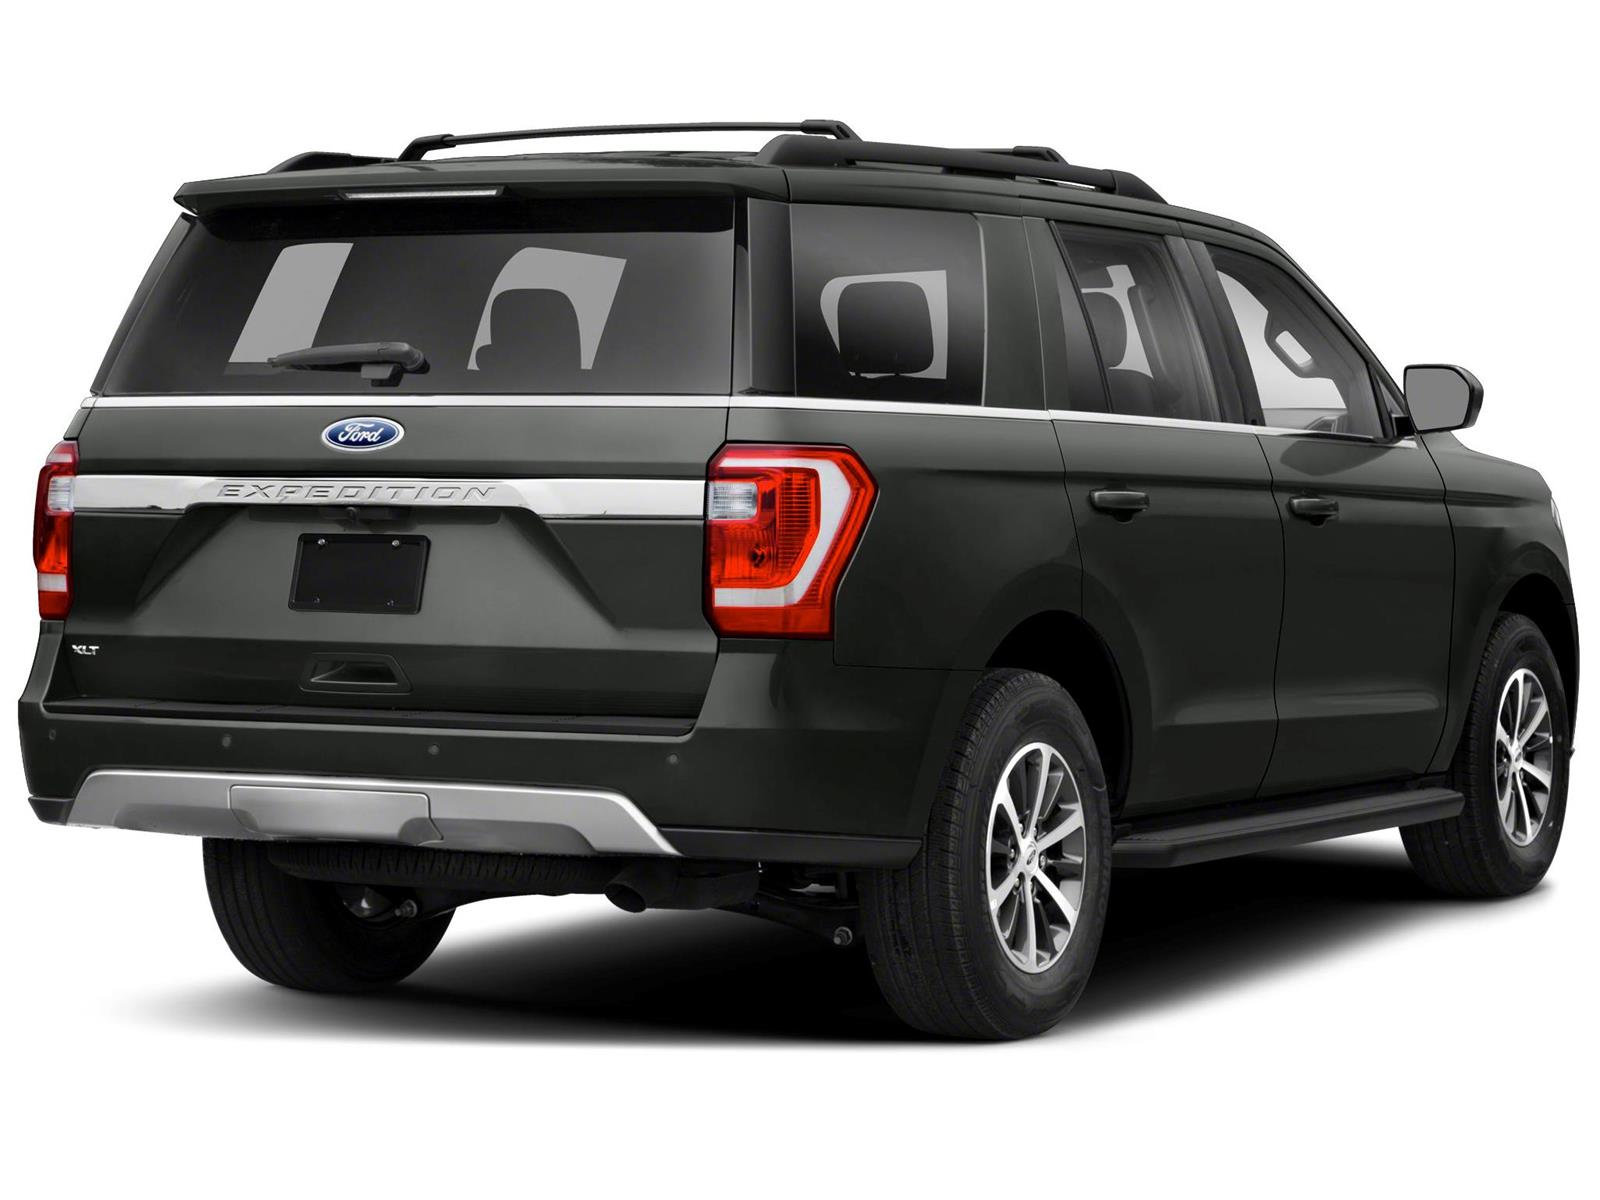 Ford Expedition Platinum Max 4x4 nuevo color A eleccion precio 1,581,000